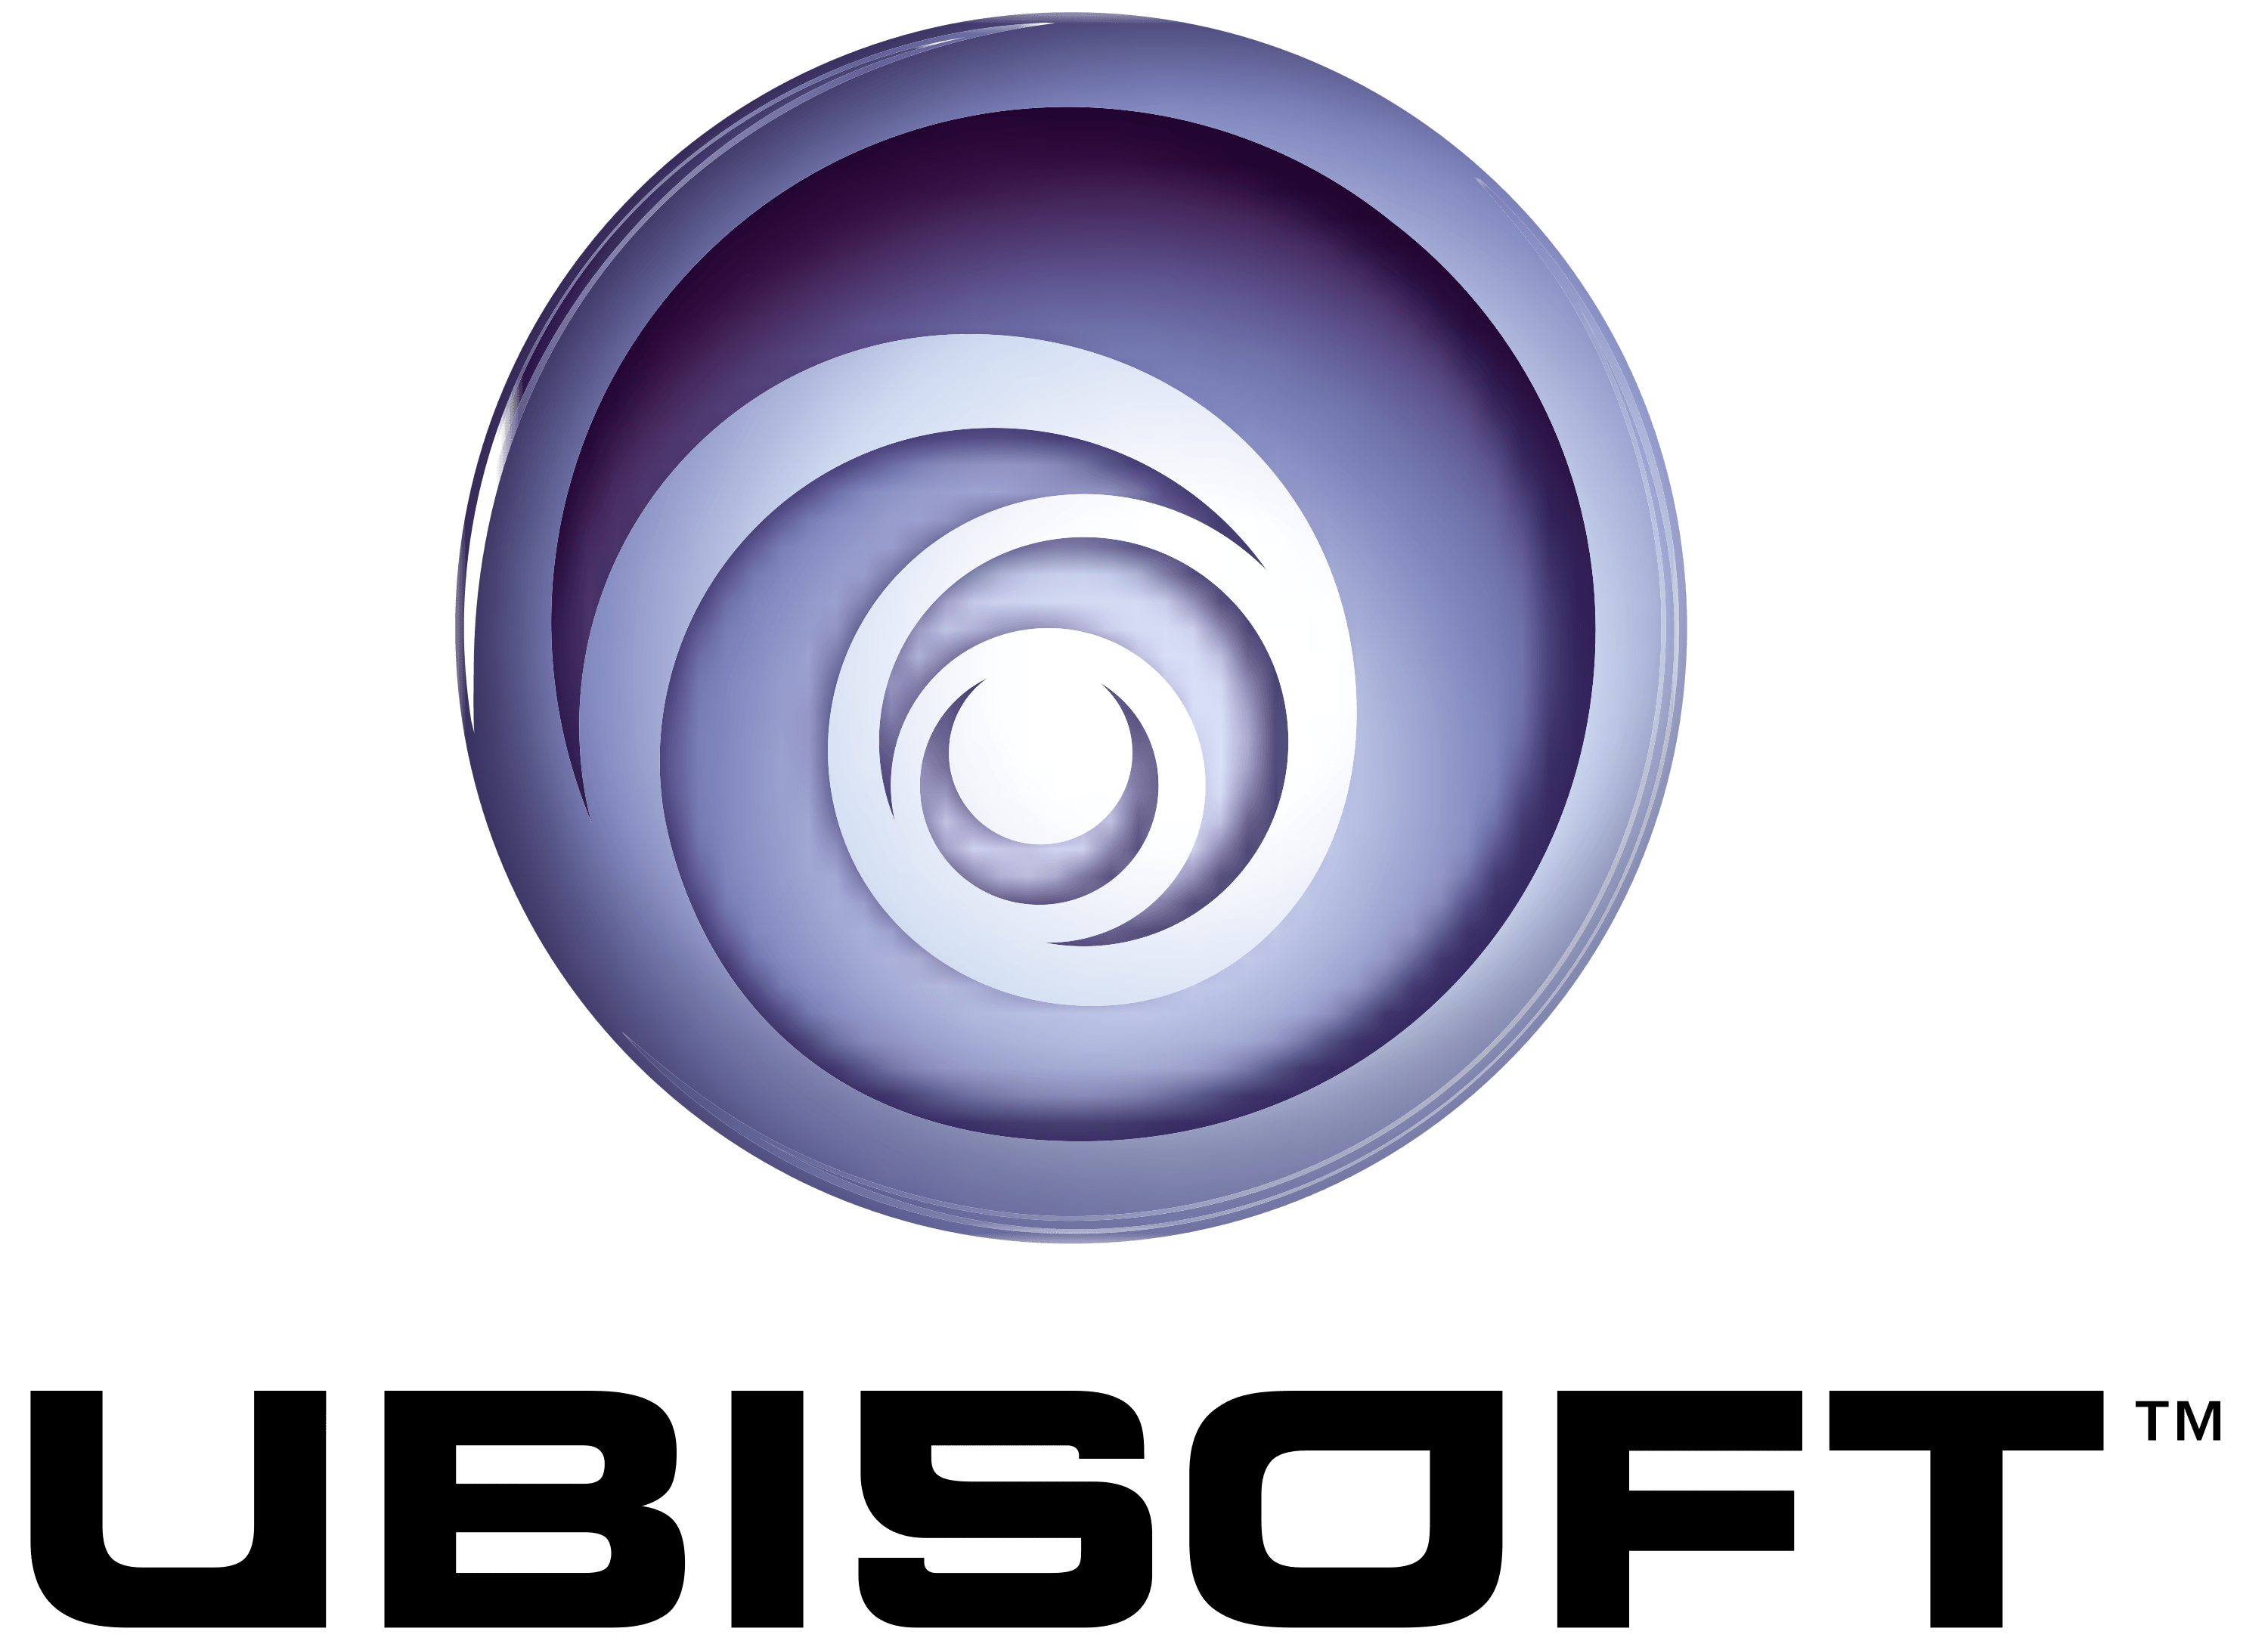 Ubisoft Logo - Ubisoft Logo Old PNG Image - PurePNG | Free transparent CC0 PNG ...